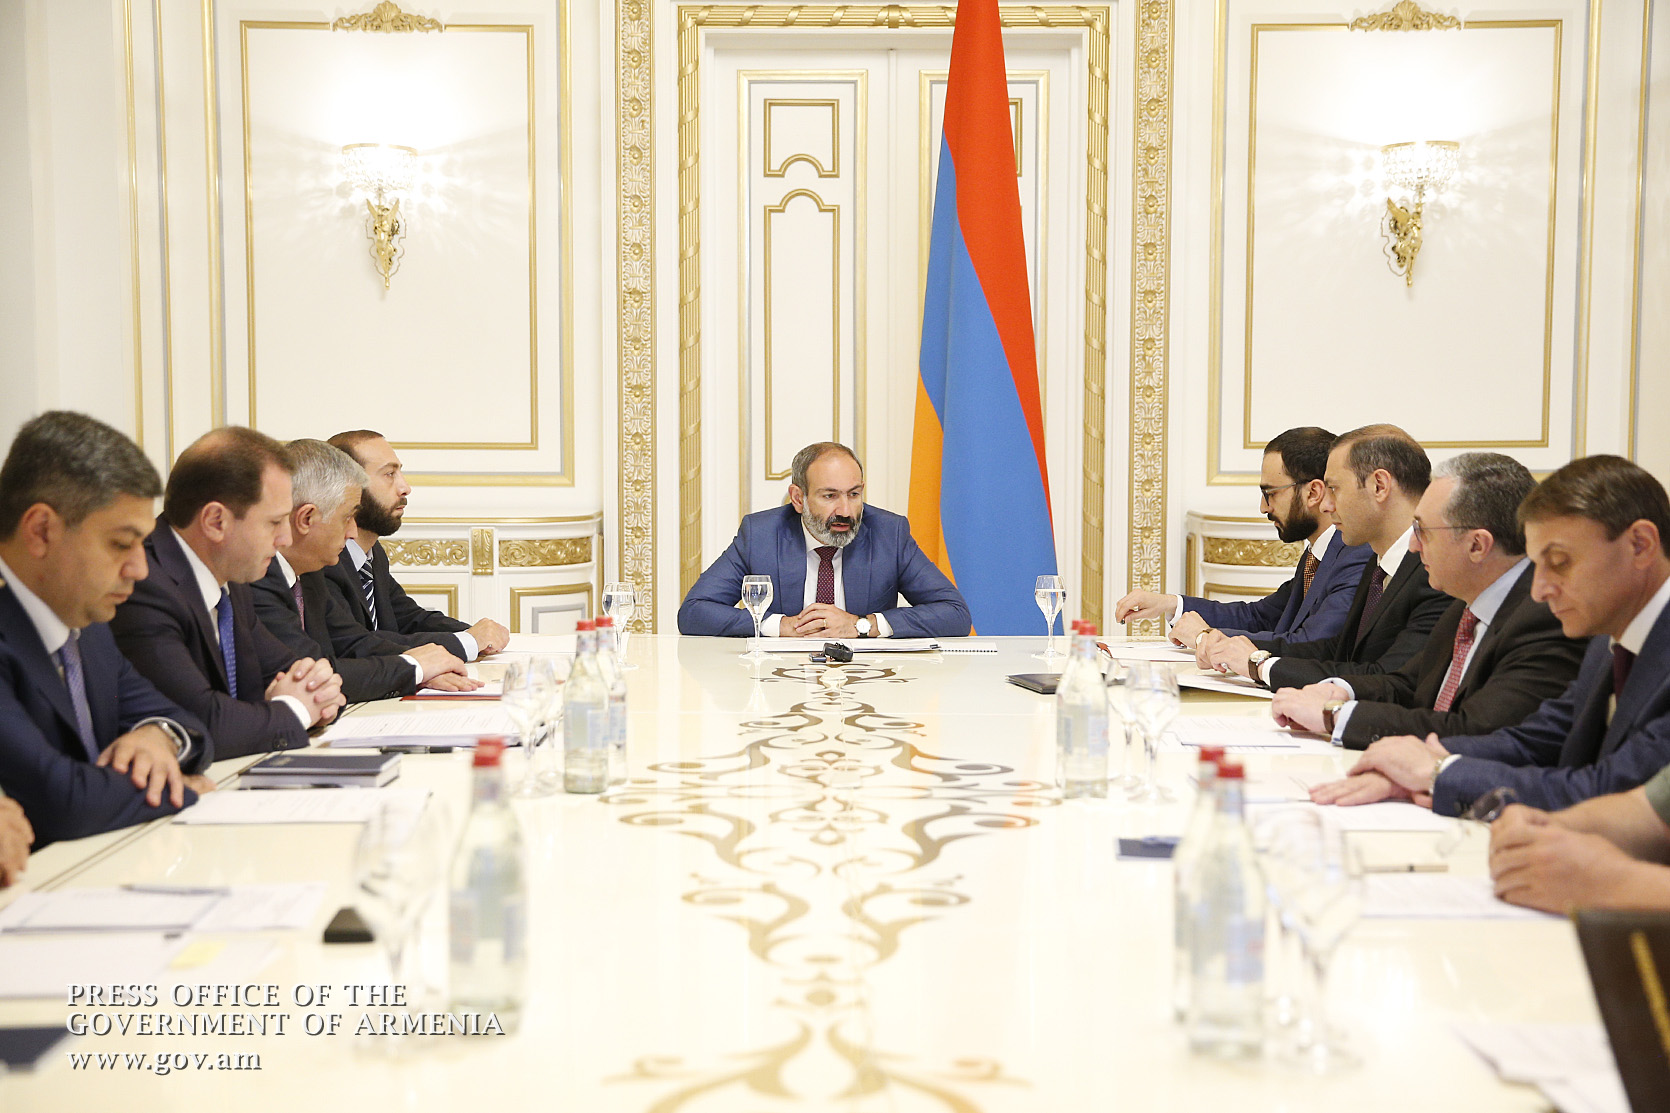 Ermenistan'da Milli Güvenlik Konseyi'nin toplantısı düzenlendi